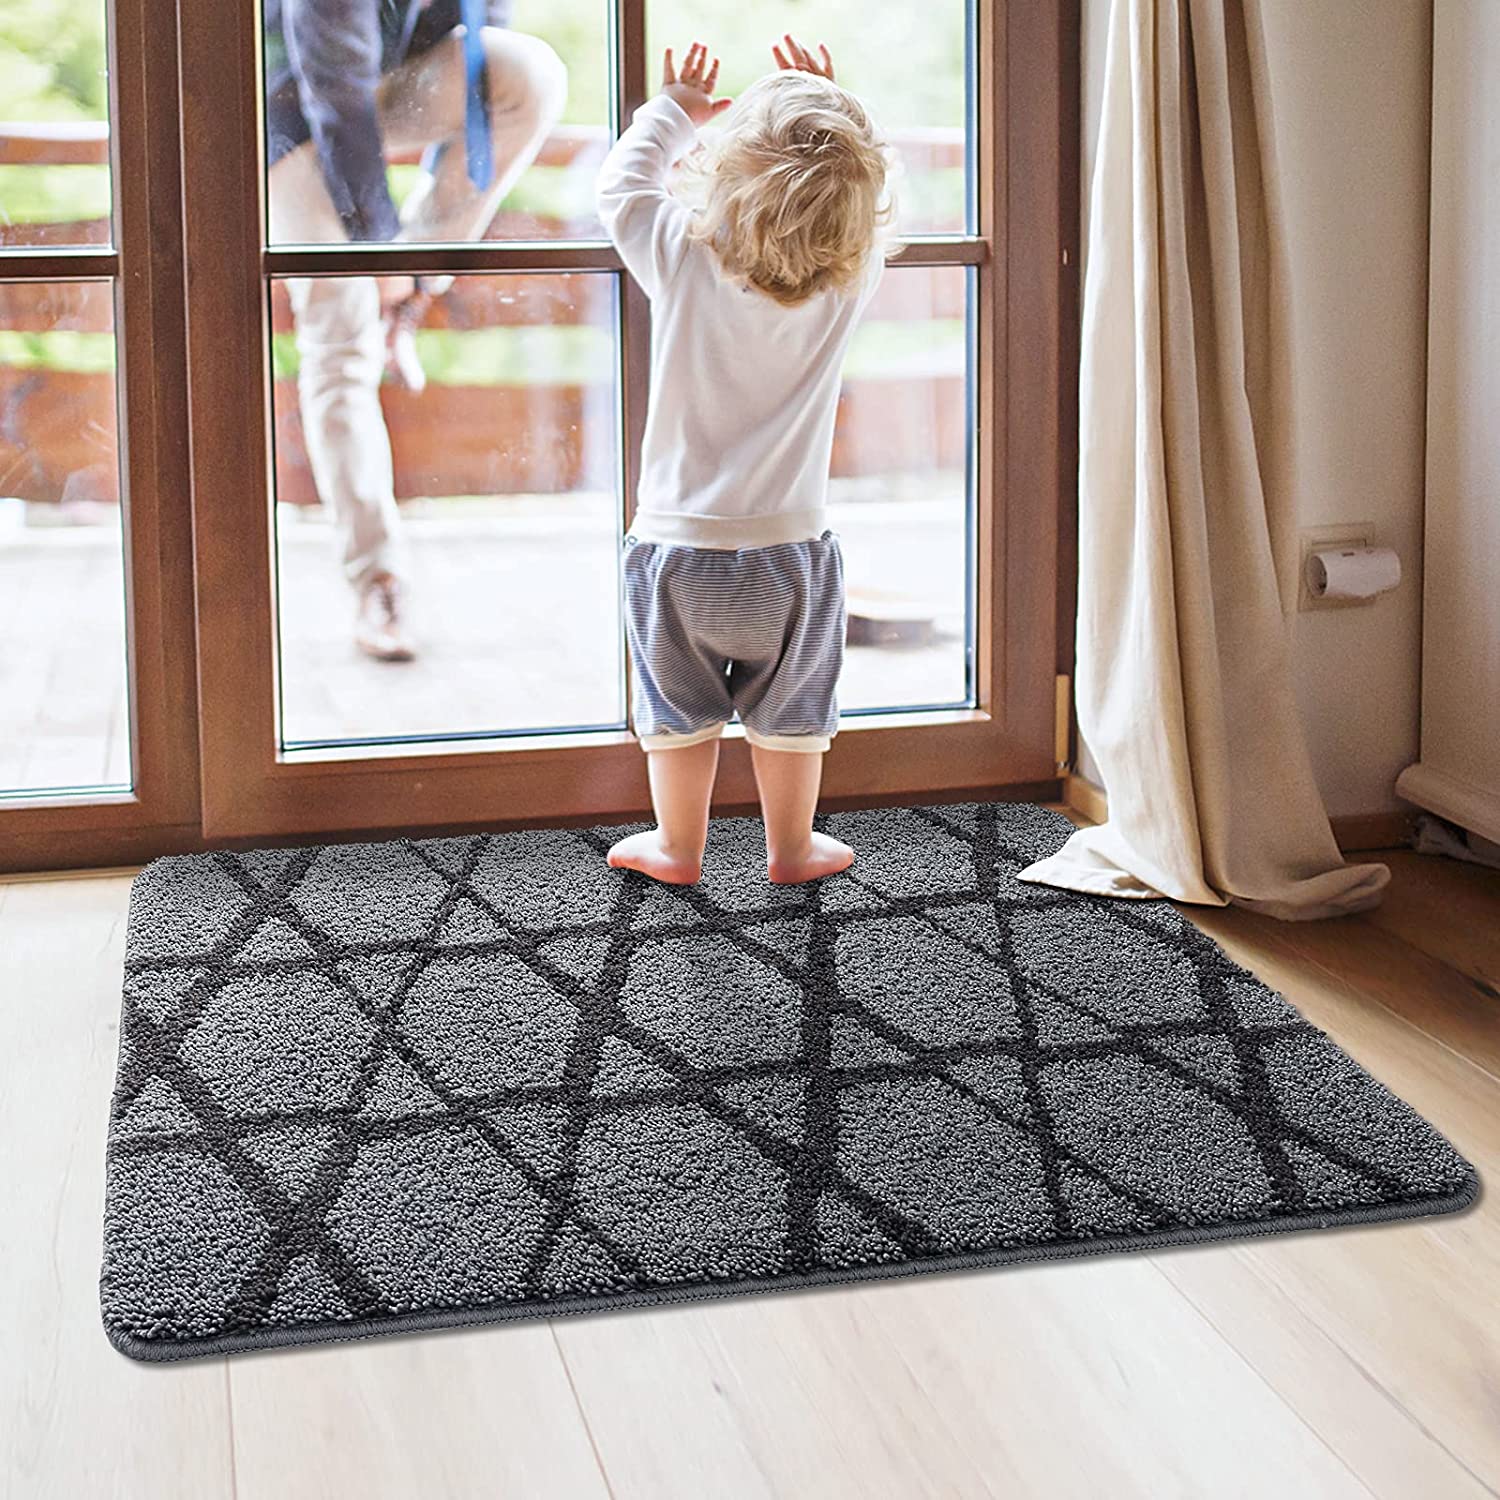 Vaukki Indoor Doormat, Non Slip Absorbent Mud Trapper Low-Profile Inside  Floor Mats, Soft Machine Washable Large Rugs Door Carpet for Entryway